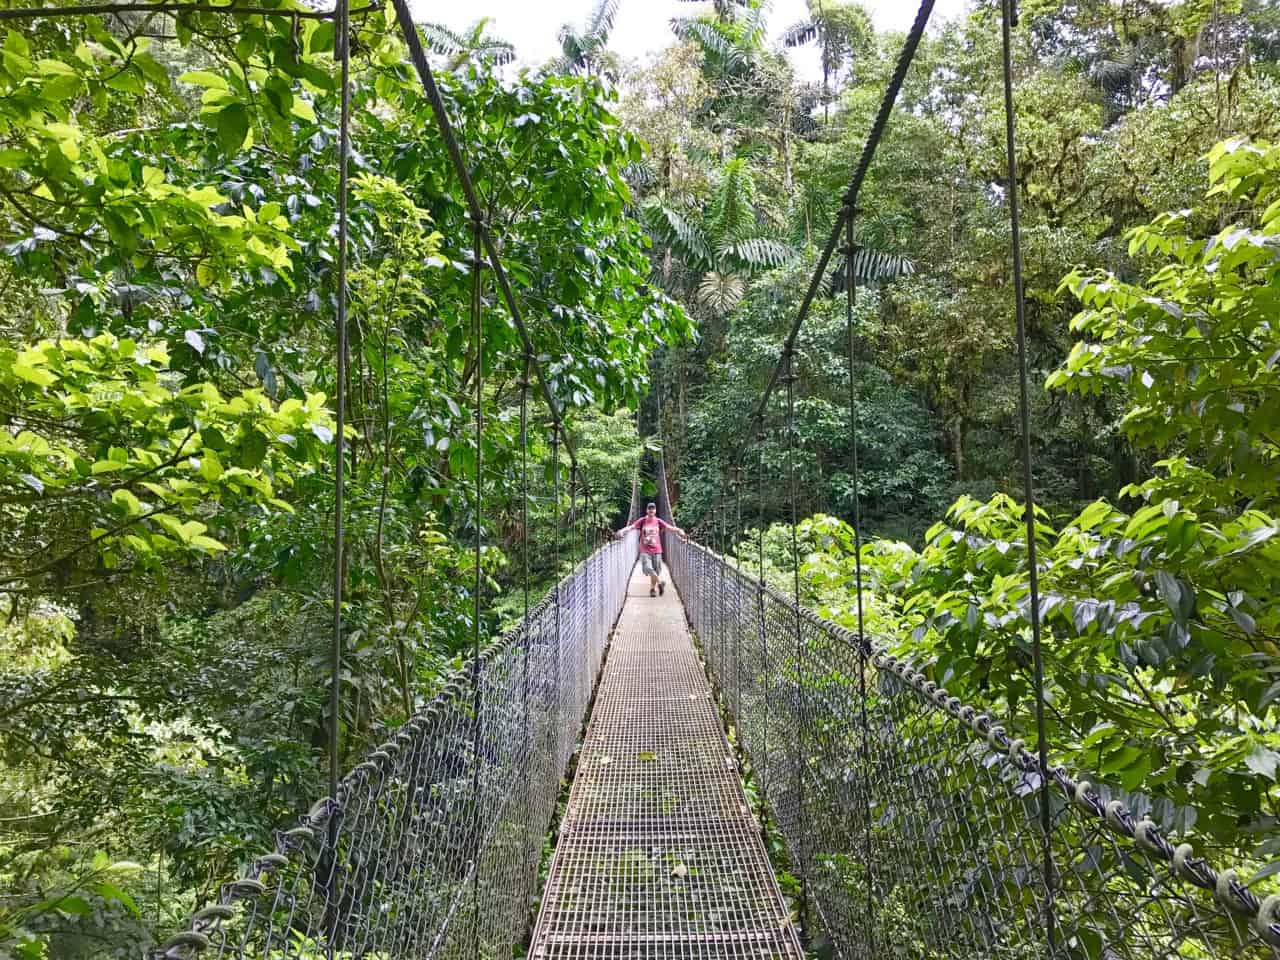  John stă pe un pod suspendat deasupra baldachinului la Mistico, un parc din Costa Rica.